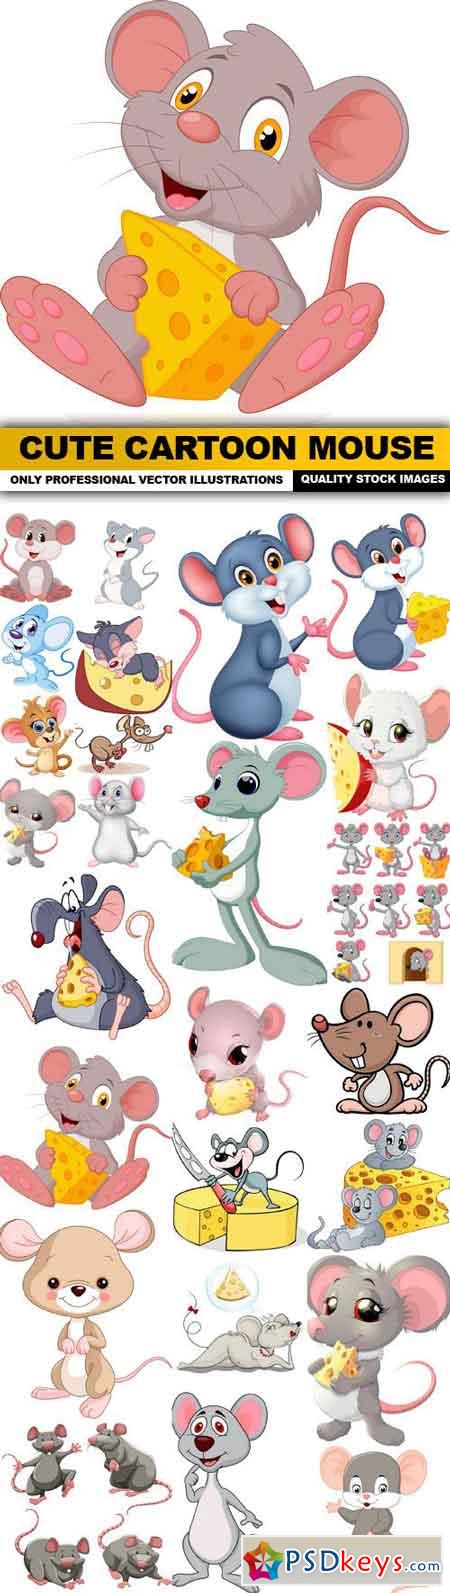 Cute Cartoon Mouse - 25 Vector